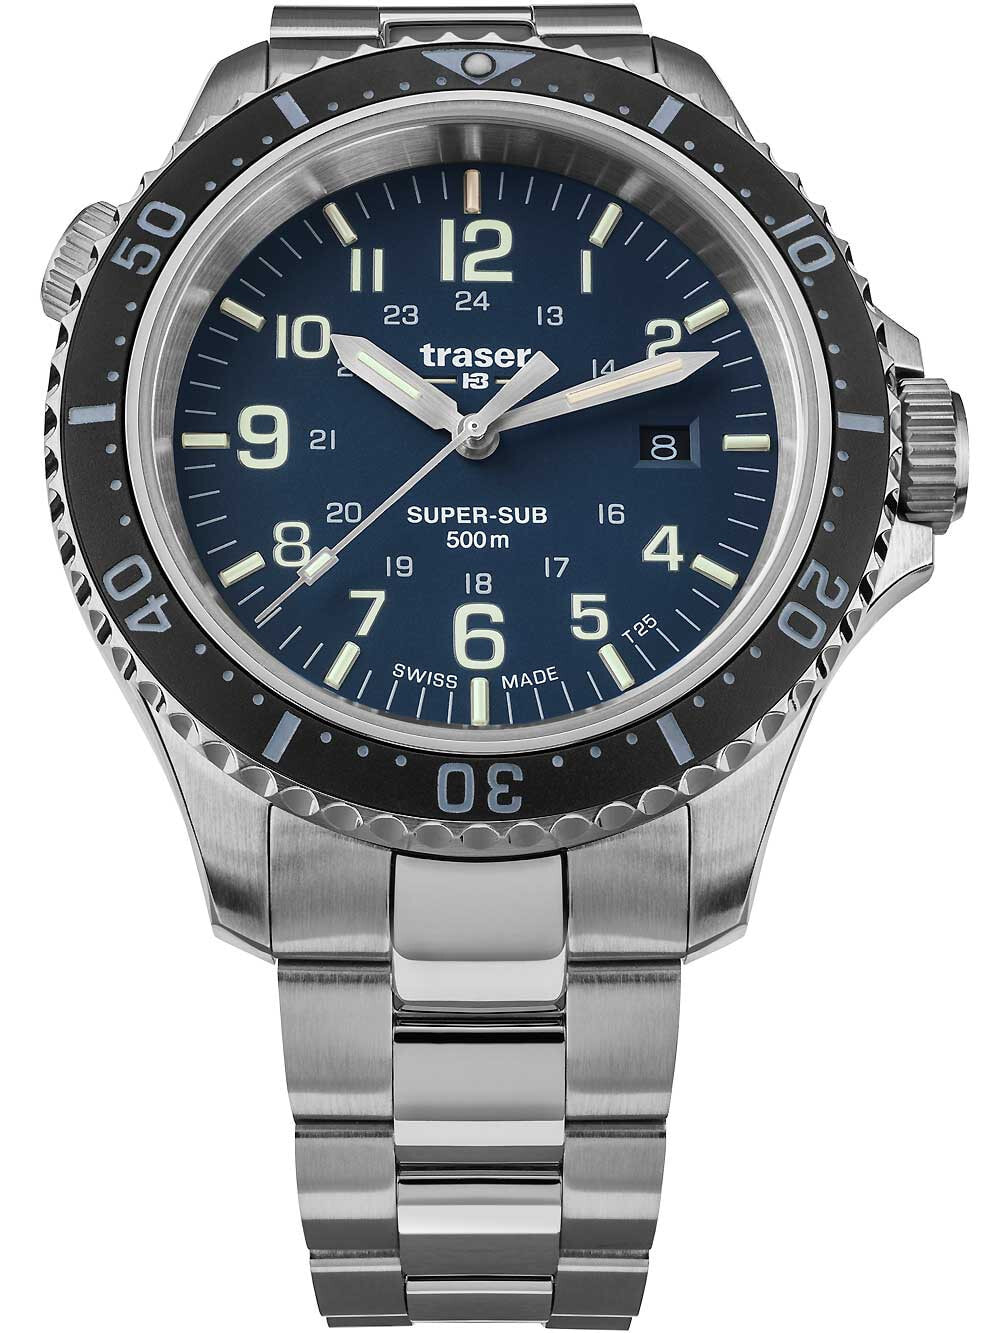 Мужские наручные часы с серебряным браслетом Traser H3 109375 P67 T25 SuperSub blue 46 mm diver 50ATM